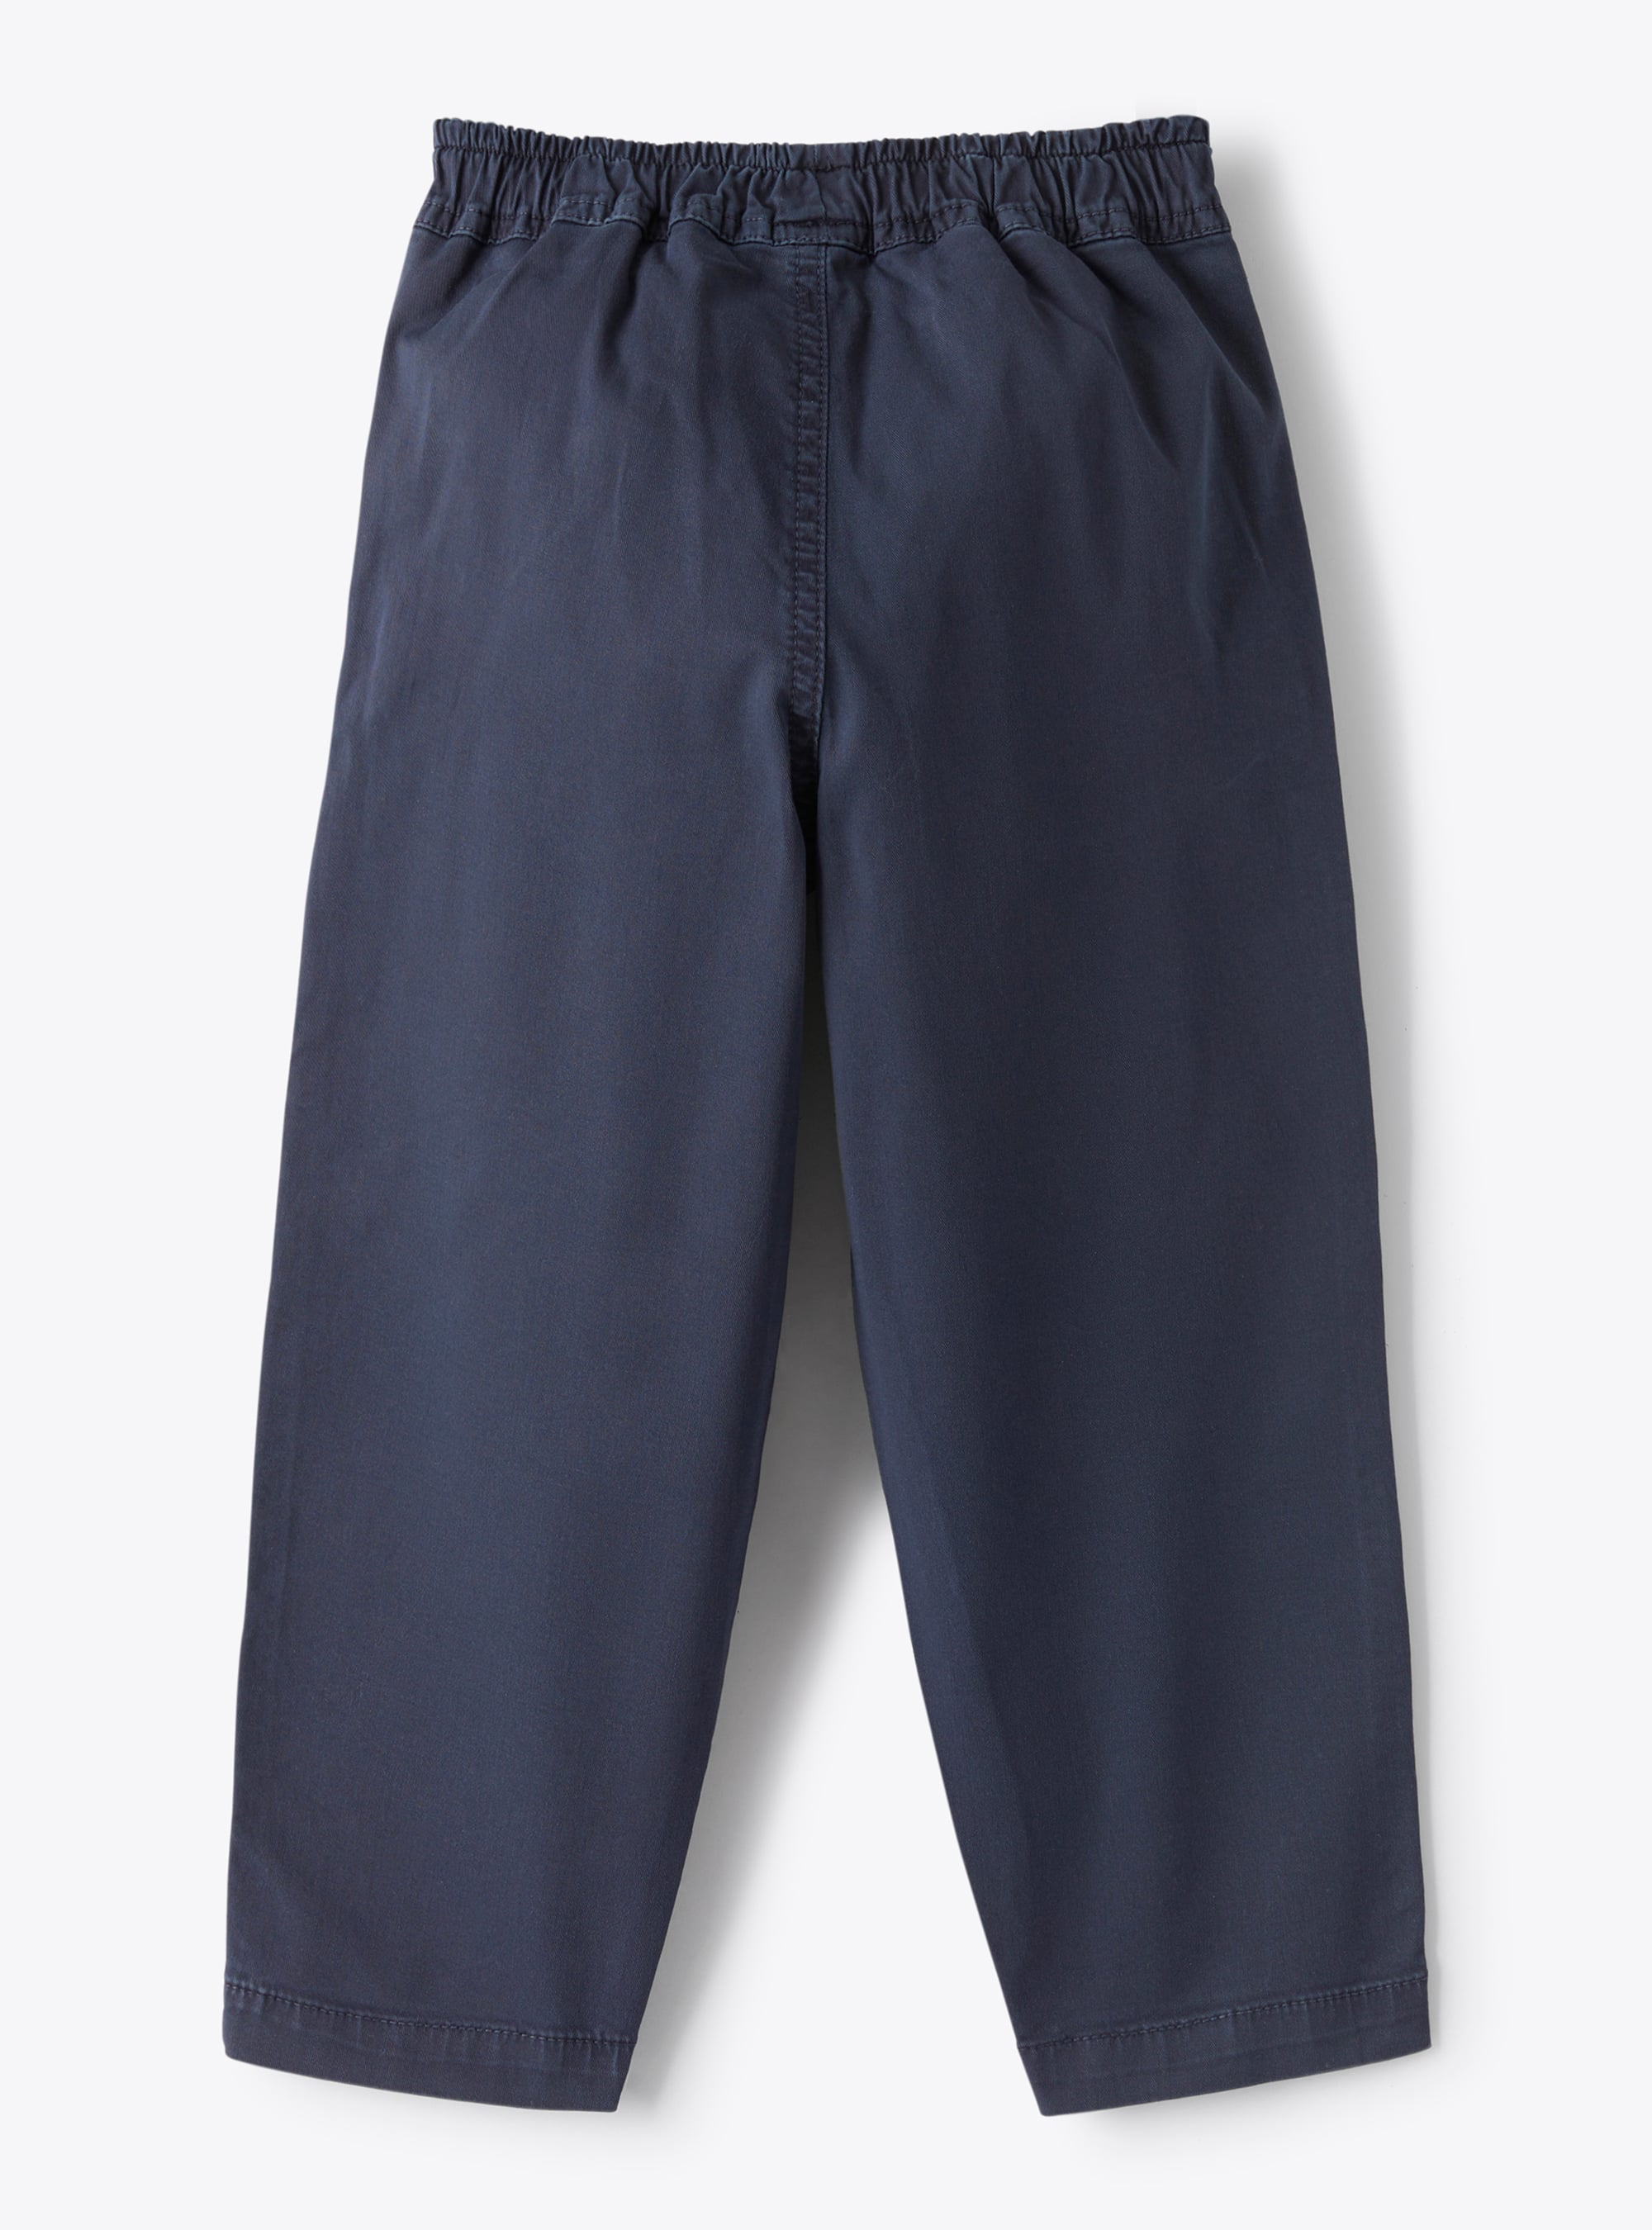 Pantalone lungo in gabardina tinto capo di colore blu navy - Blu | Il Gufo